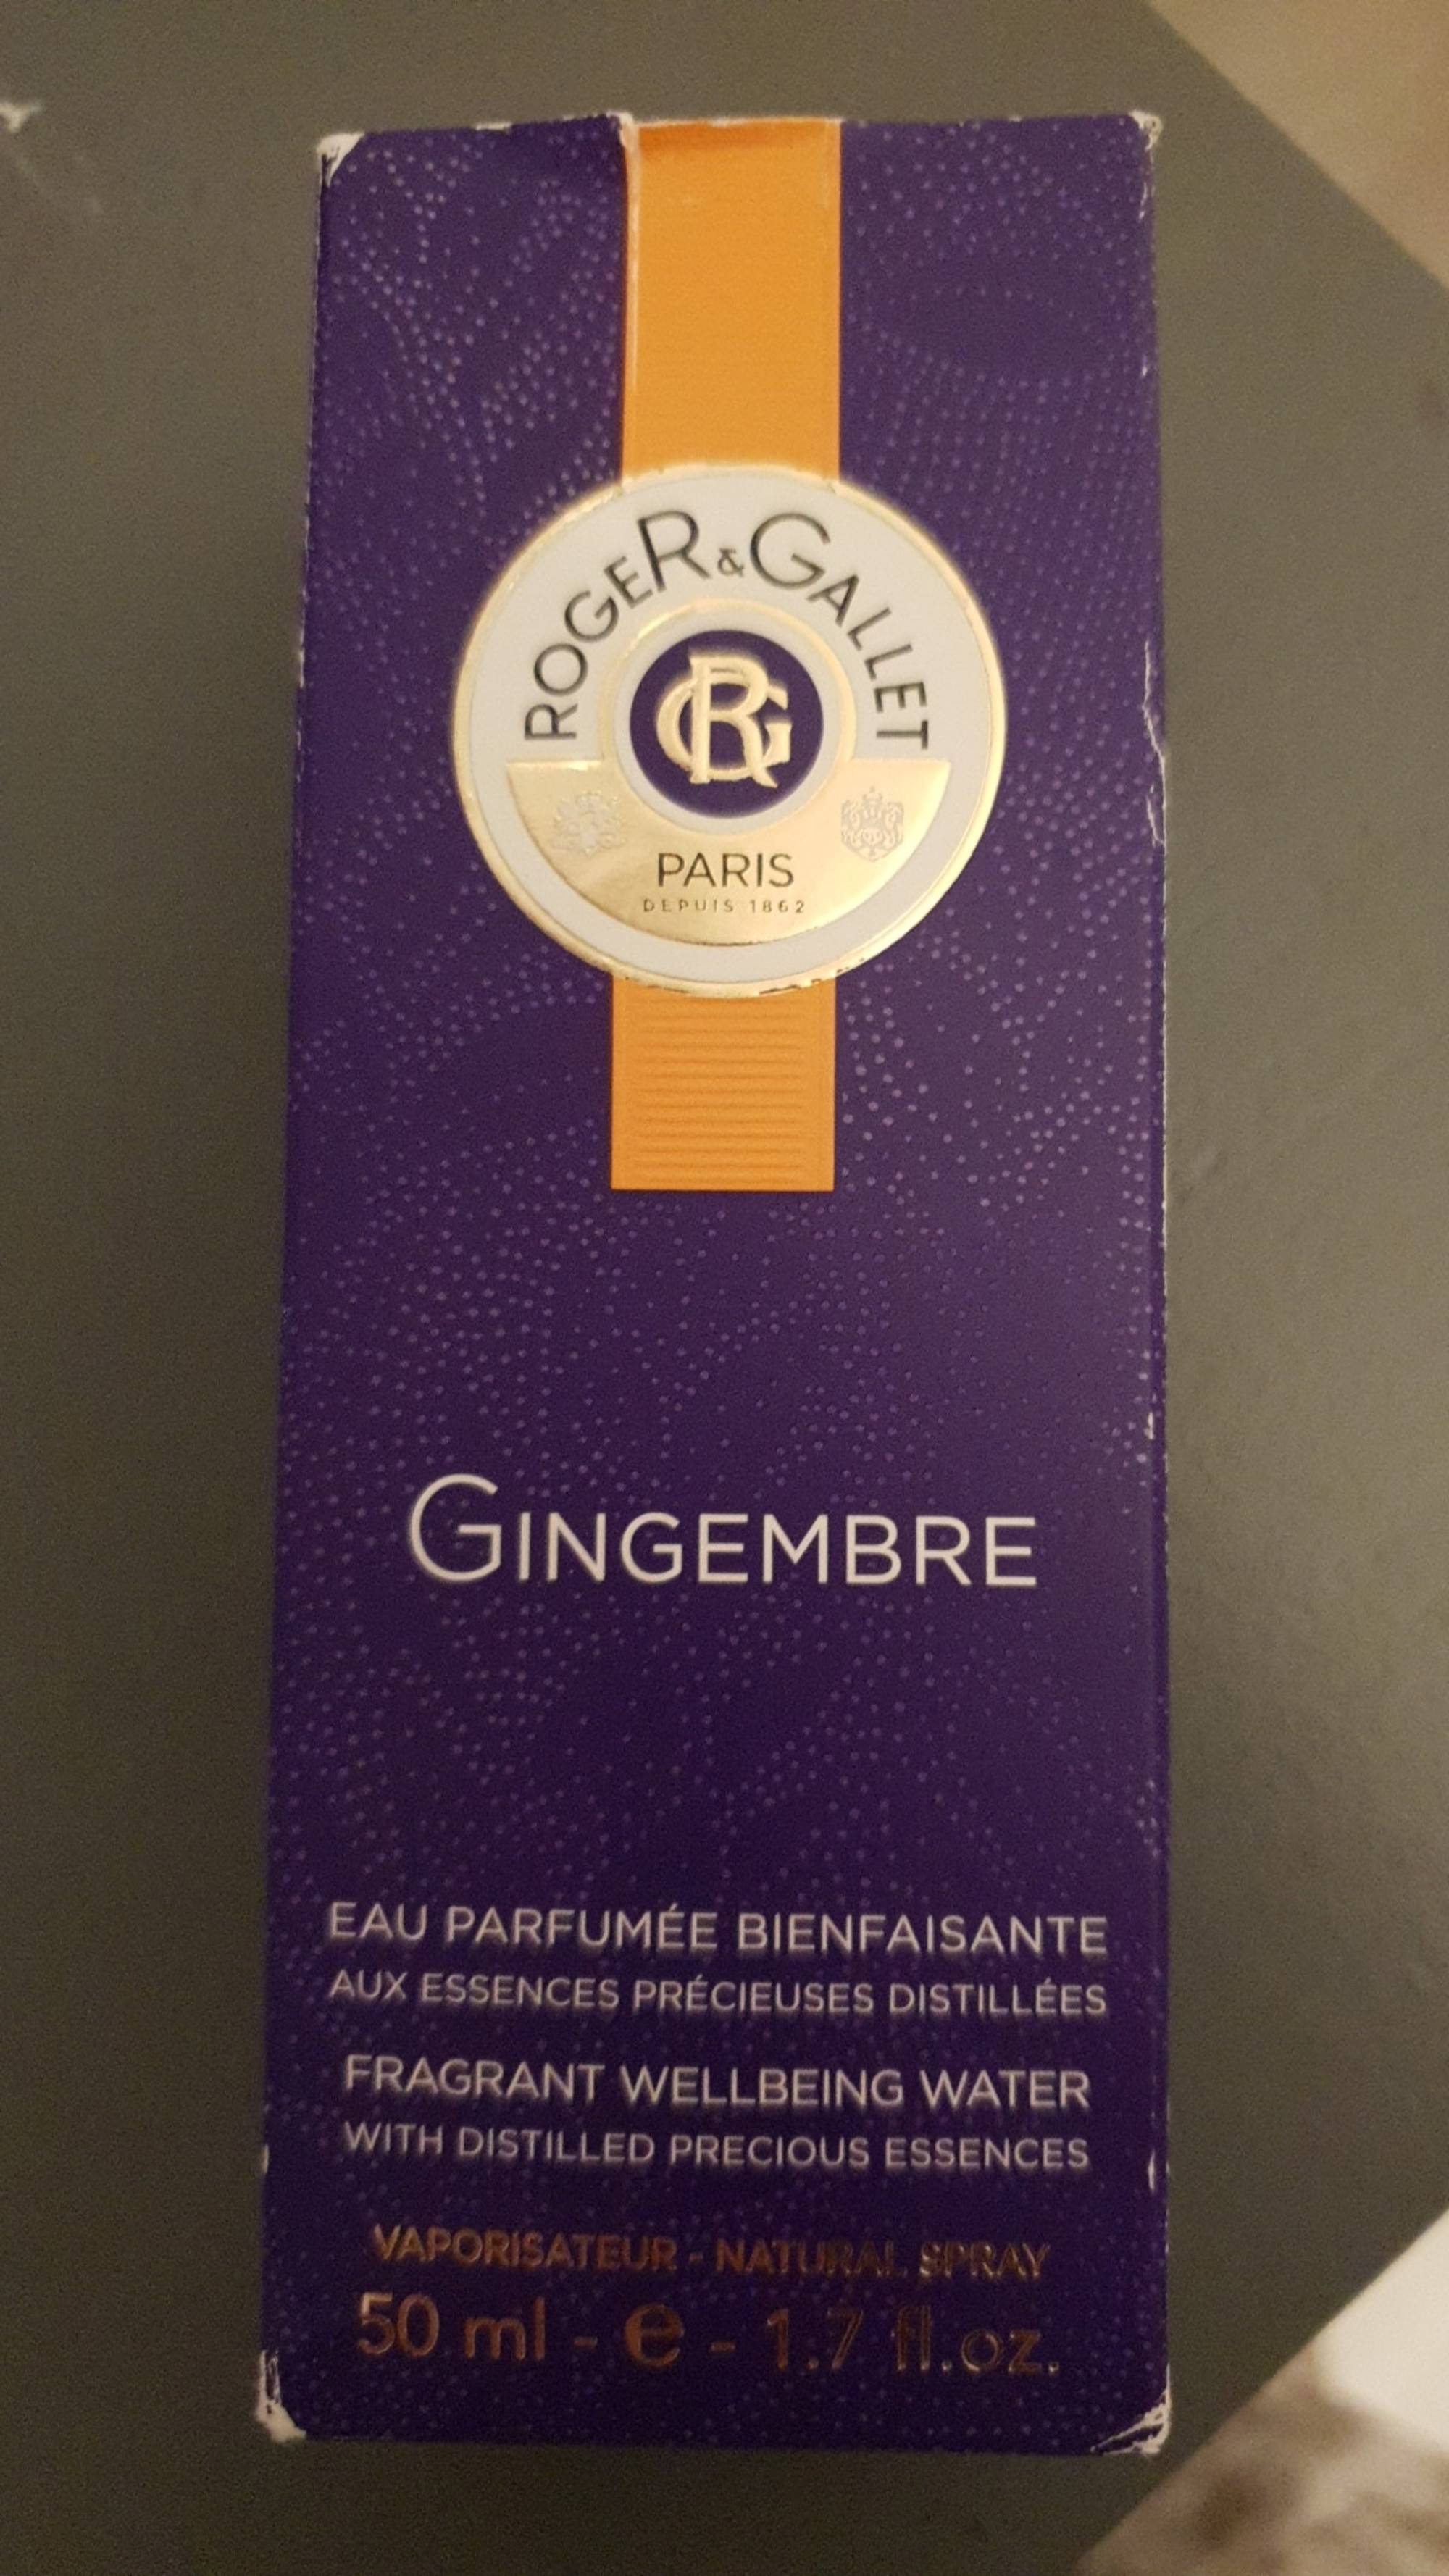 ROGER & GALLET - Gingembre - Eau parfumée bienfaisante